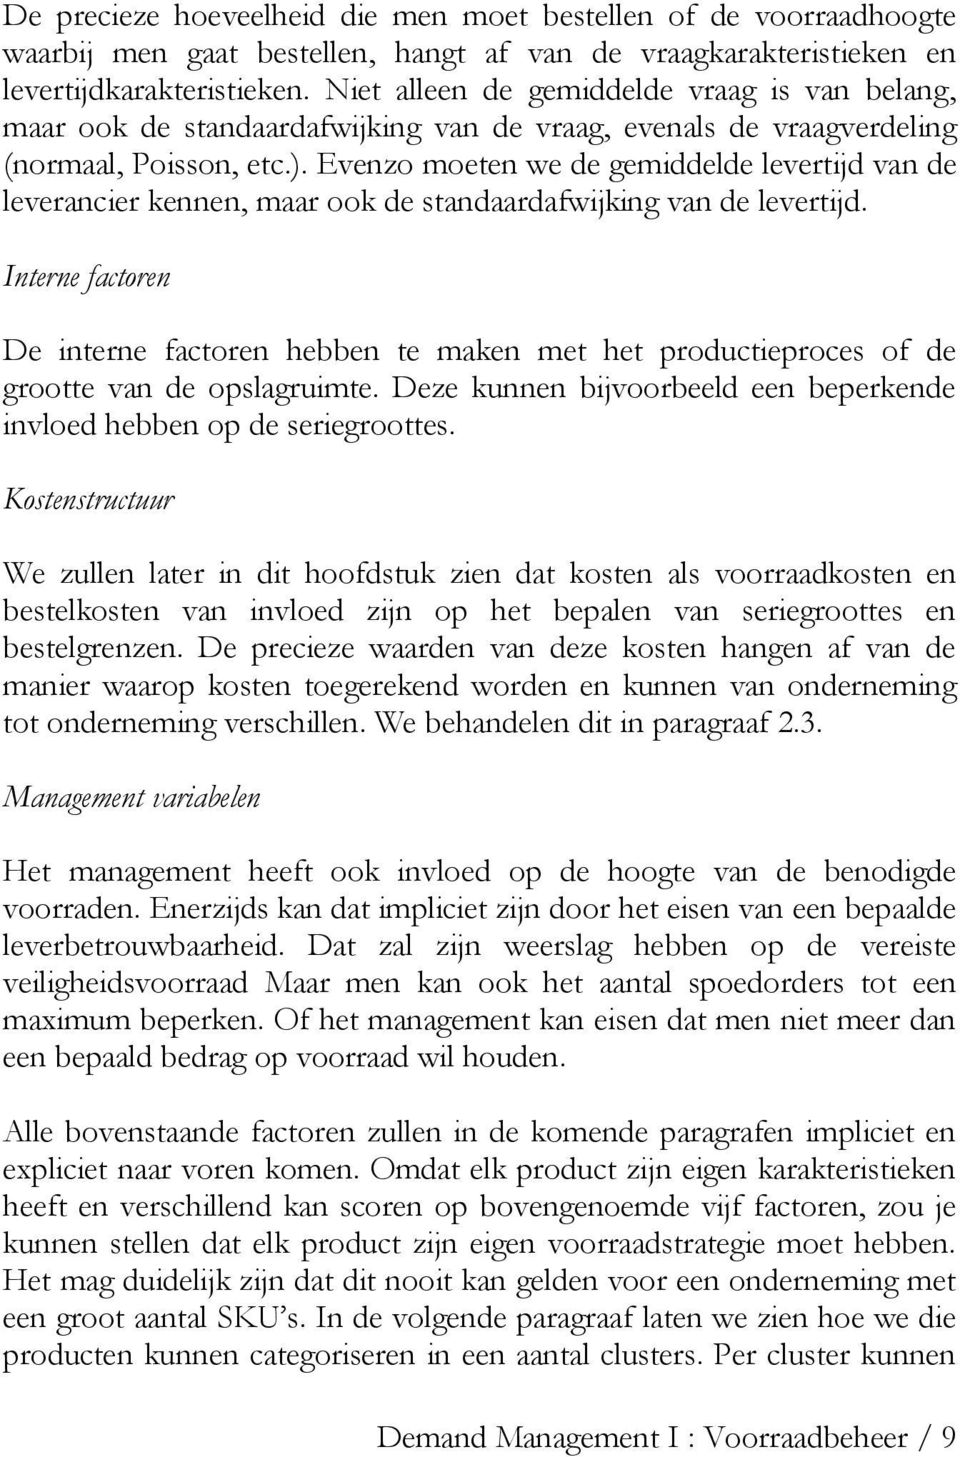 Evenzo moeten we de gemiddelde levertijd van de leverancier kennen, maar ook de standaardafwijking van de levertijd.